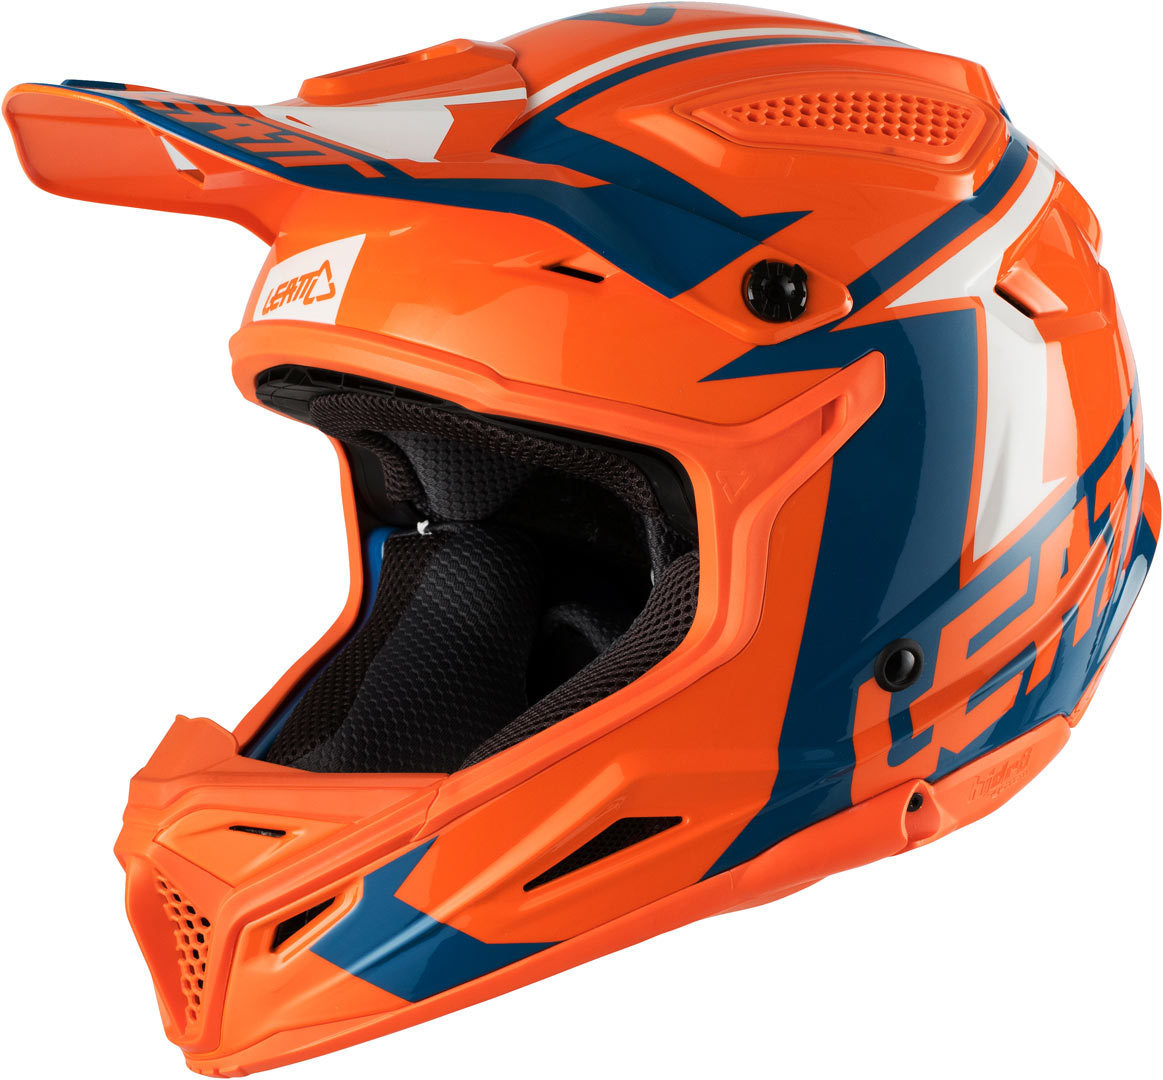 Шлем Leatt GPX 4.5 V20 для мотокросса, оранжево-синий